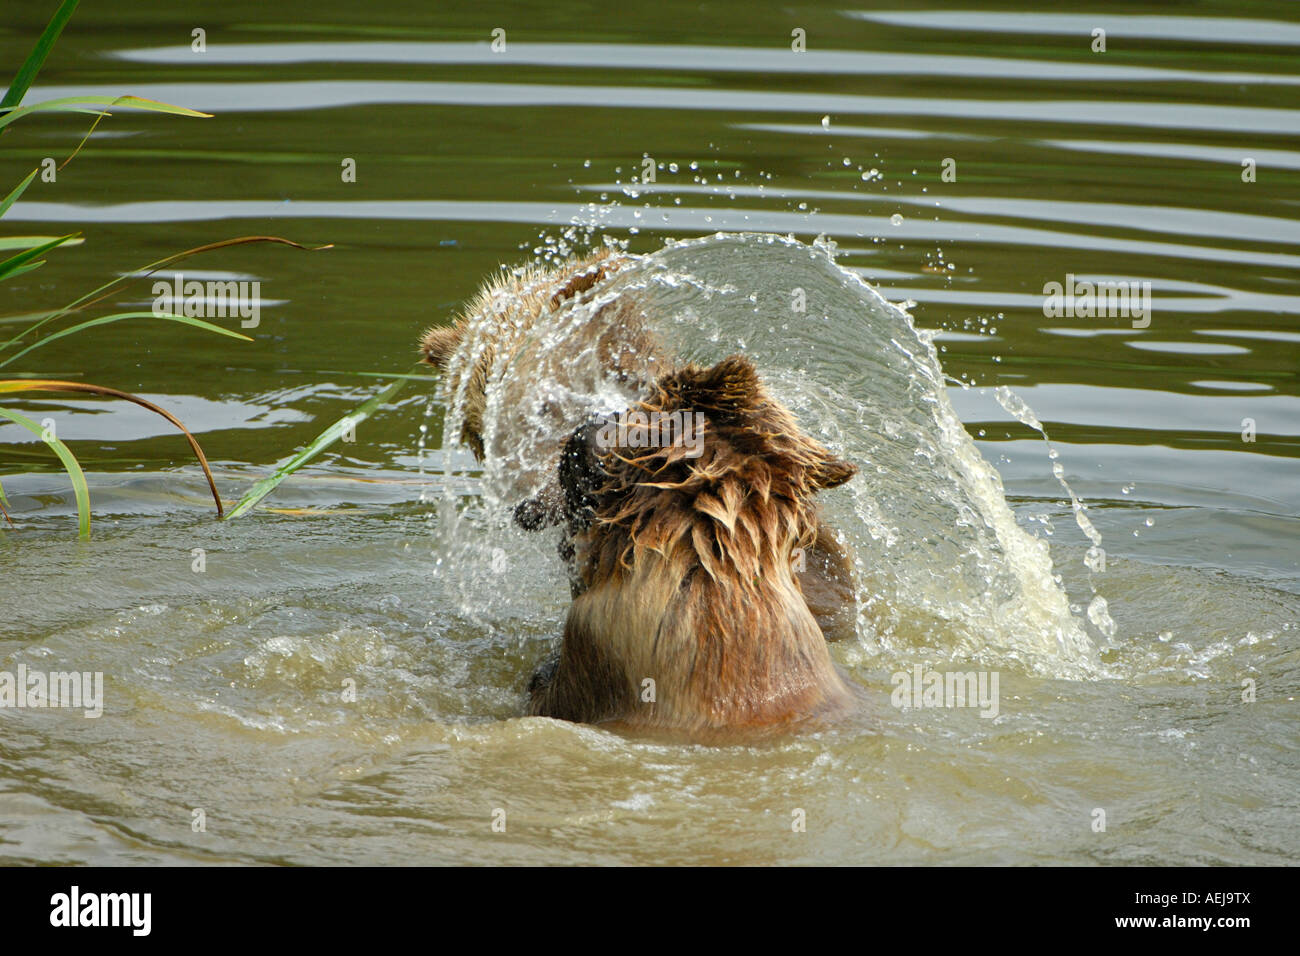 Oso pardo (Ursus arctos), dos jóvenes animales jugando en el agua Foto de stock